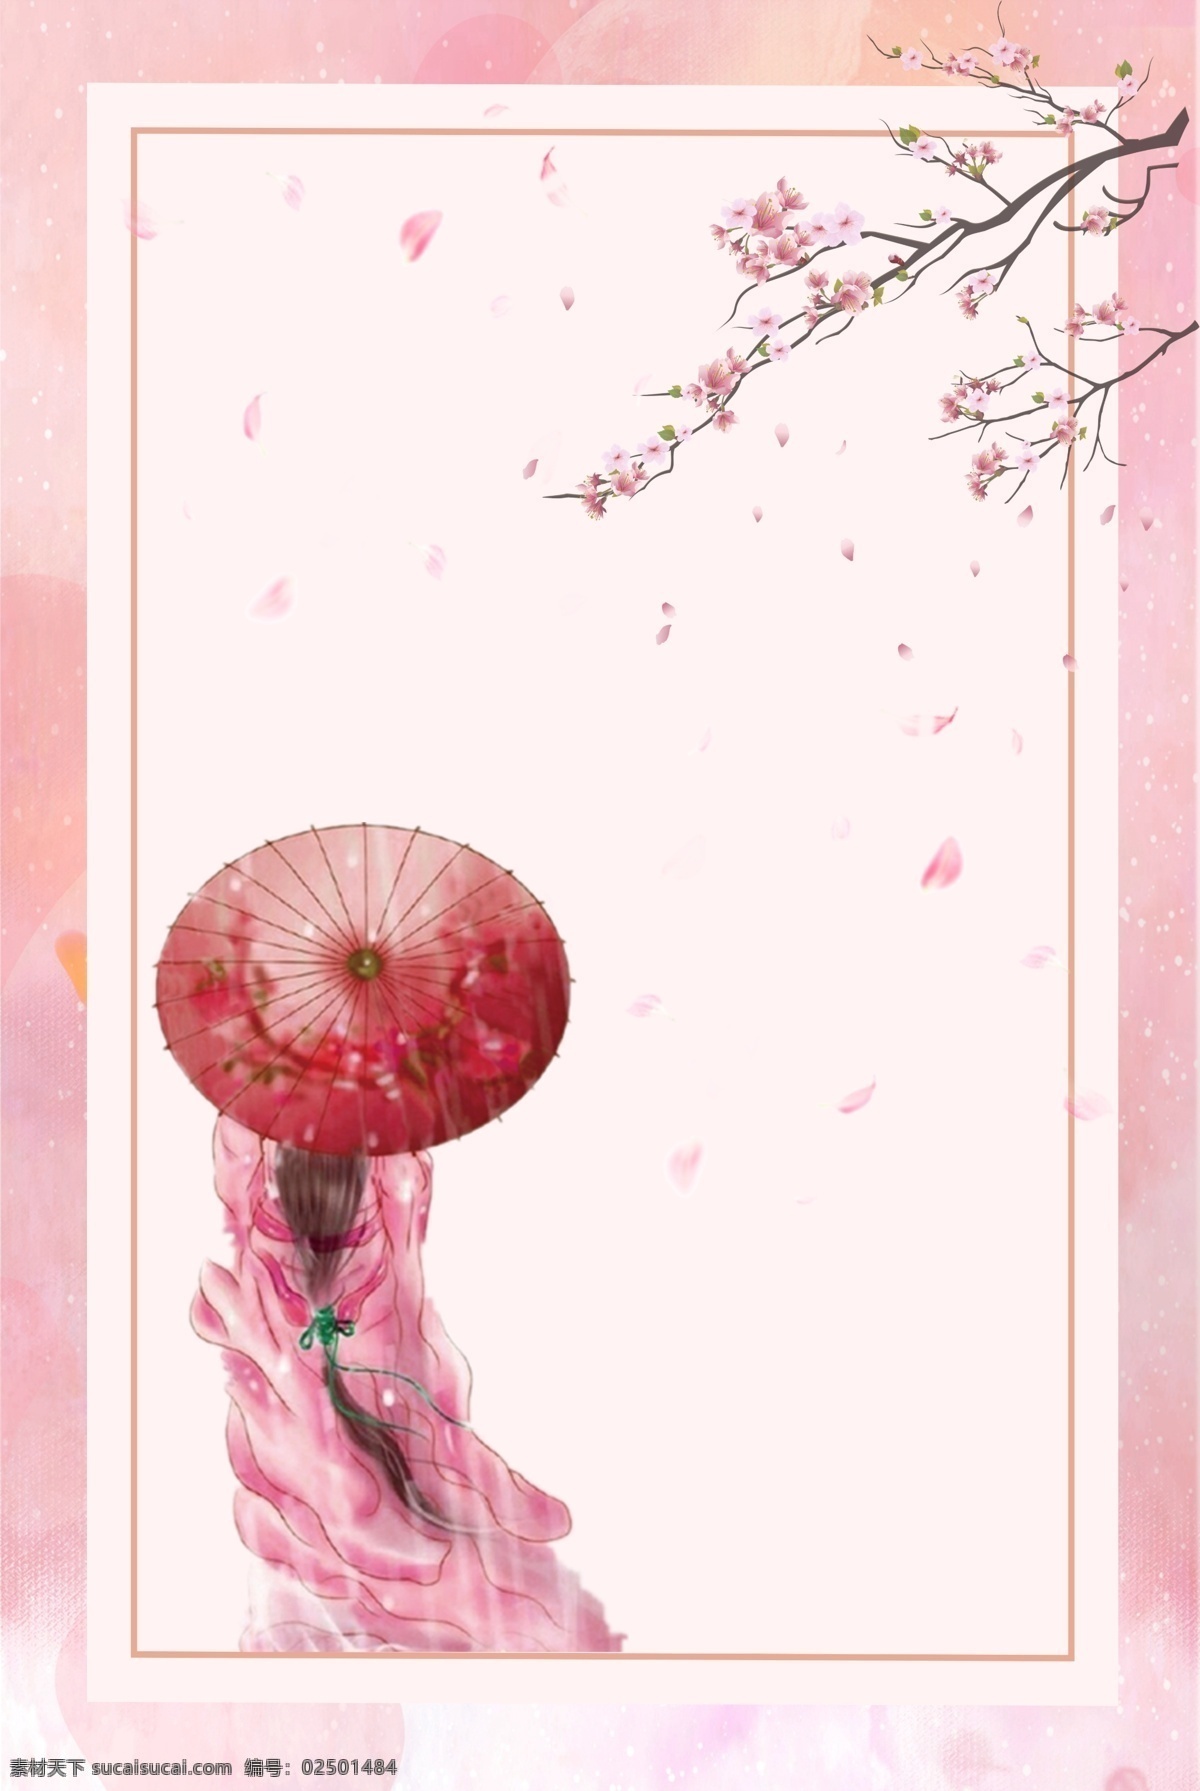 粉色 唯美 浪漫 七夕 海报 红装 背景 图 背景图 红伞 佳人 psd分层 树枝 落英缤纷